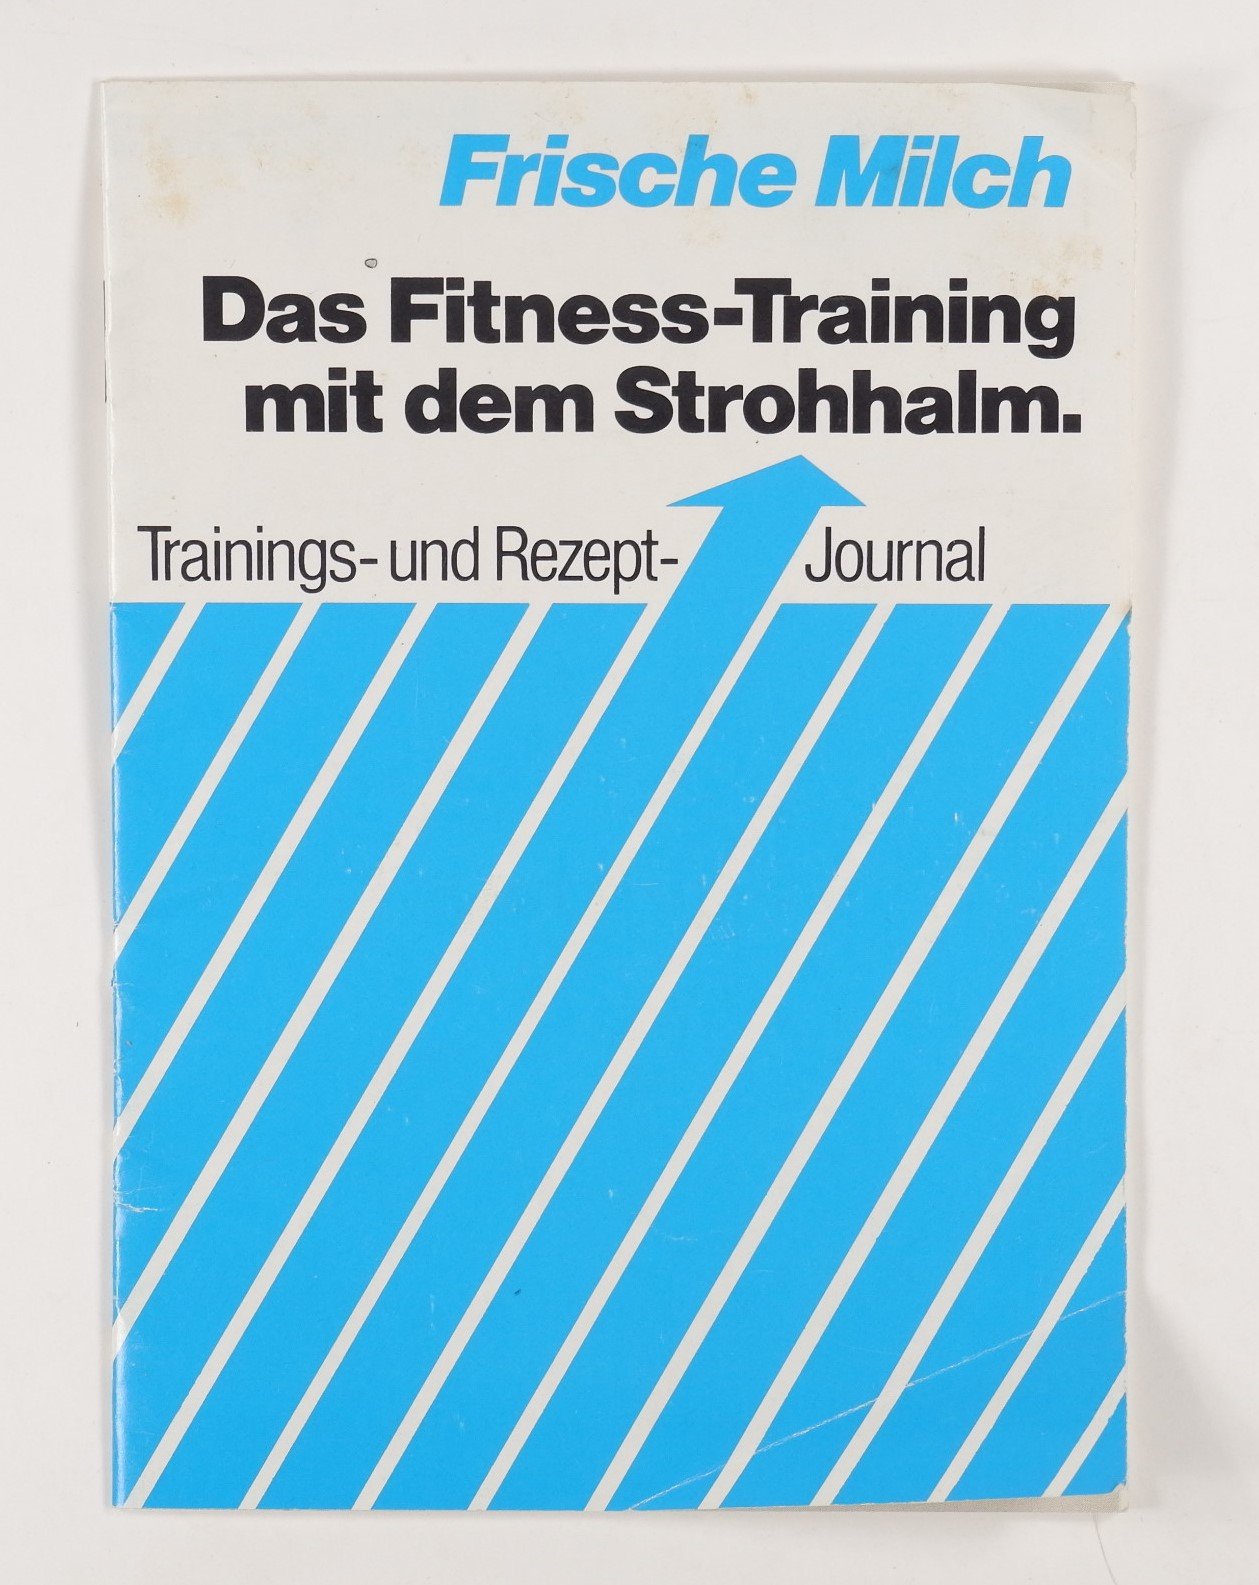 Frische Milch – Das Fitness-Training mit dem Strohhalm (Volkskunde- und Freilichtmuseum Roscheider Hof RR-F)